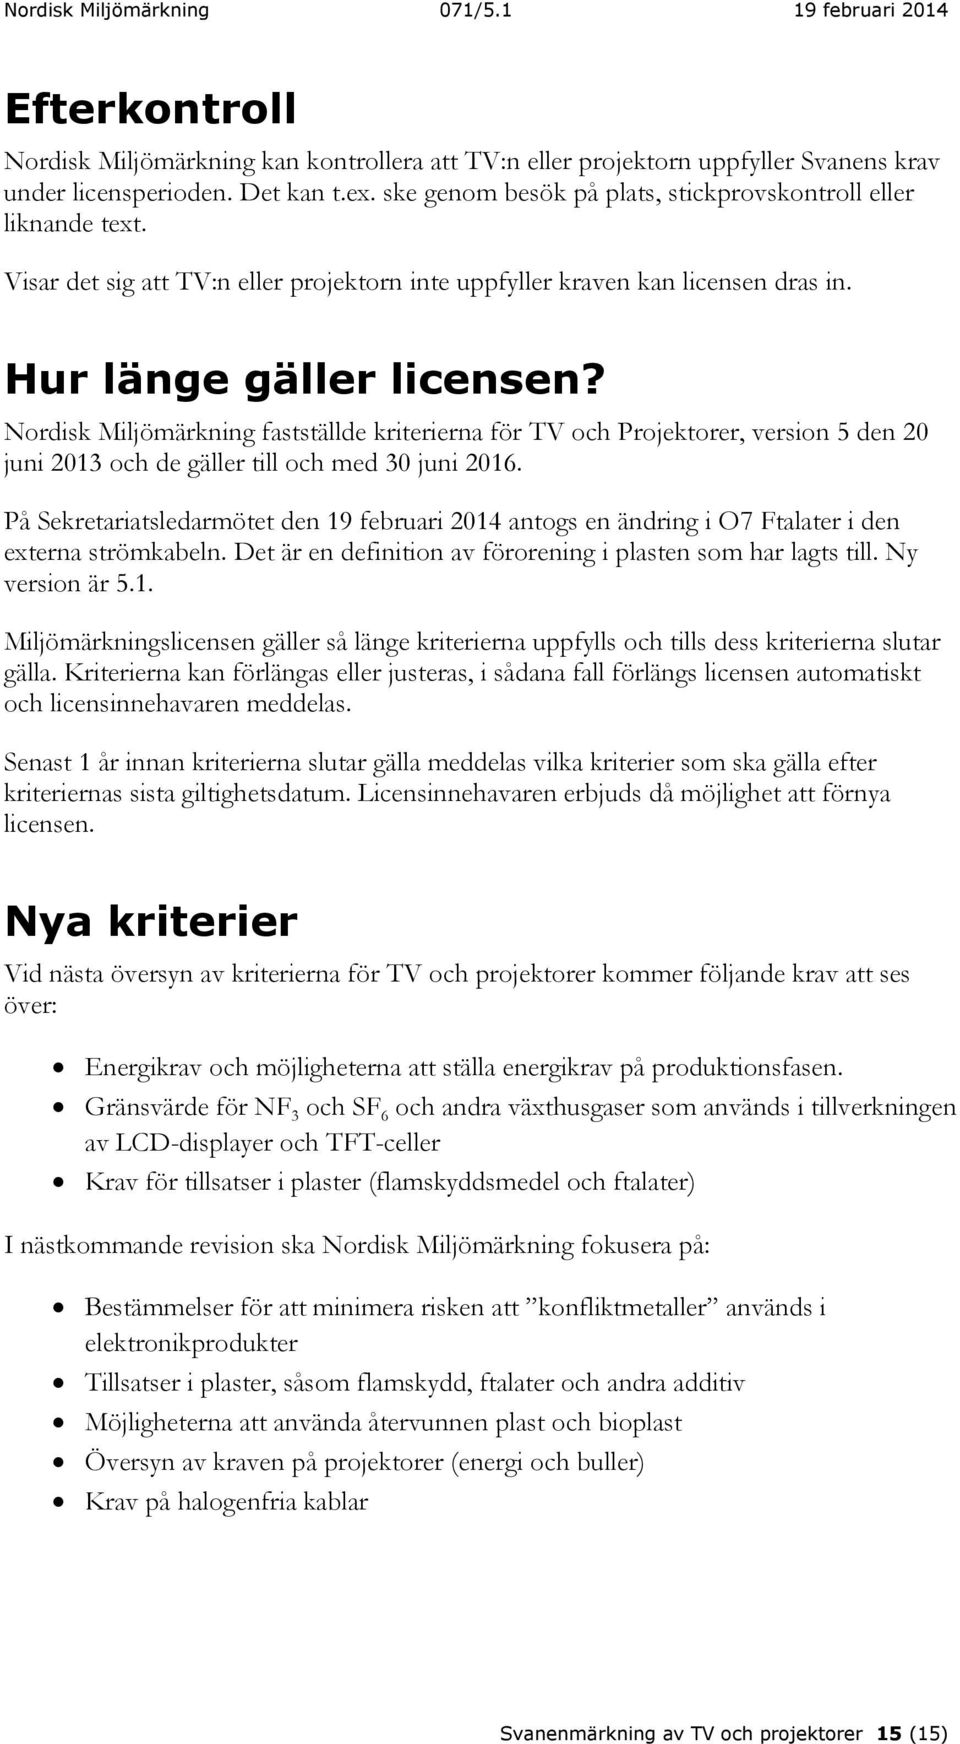 Nordisk Miljömärkning fastställde kriterierna för TV och Projektorer, version 5 den 20 juni 2013 och de gäller till och med 30 juni 2016.